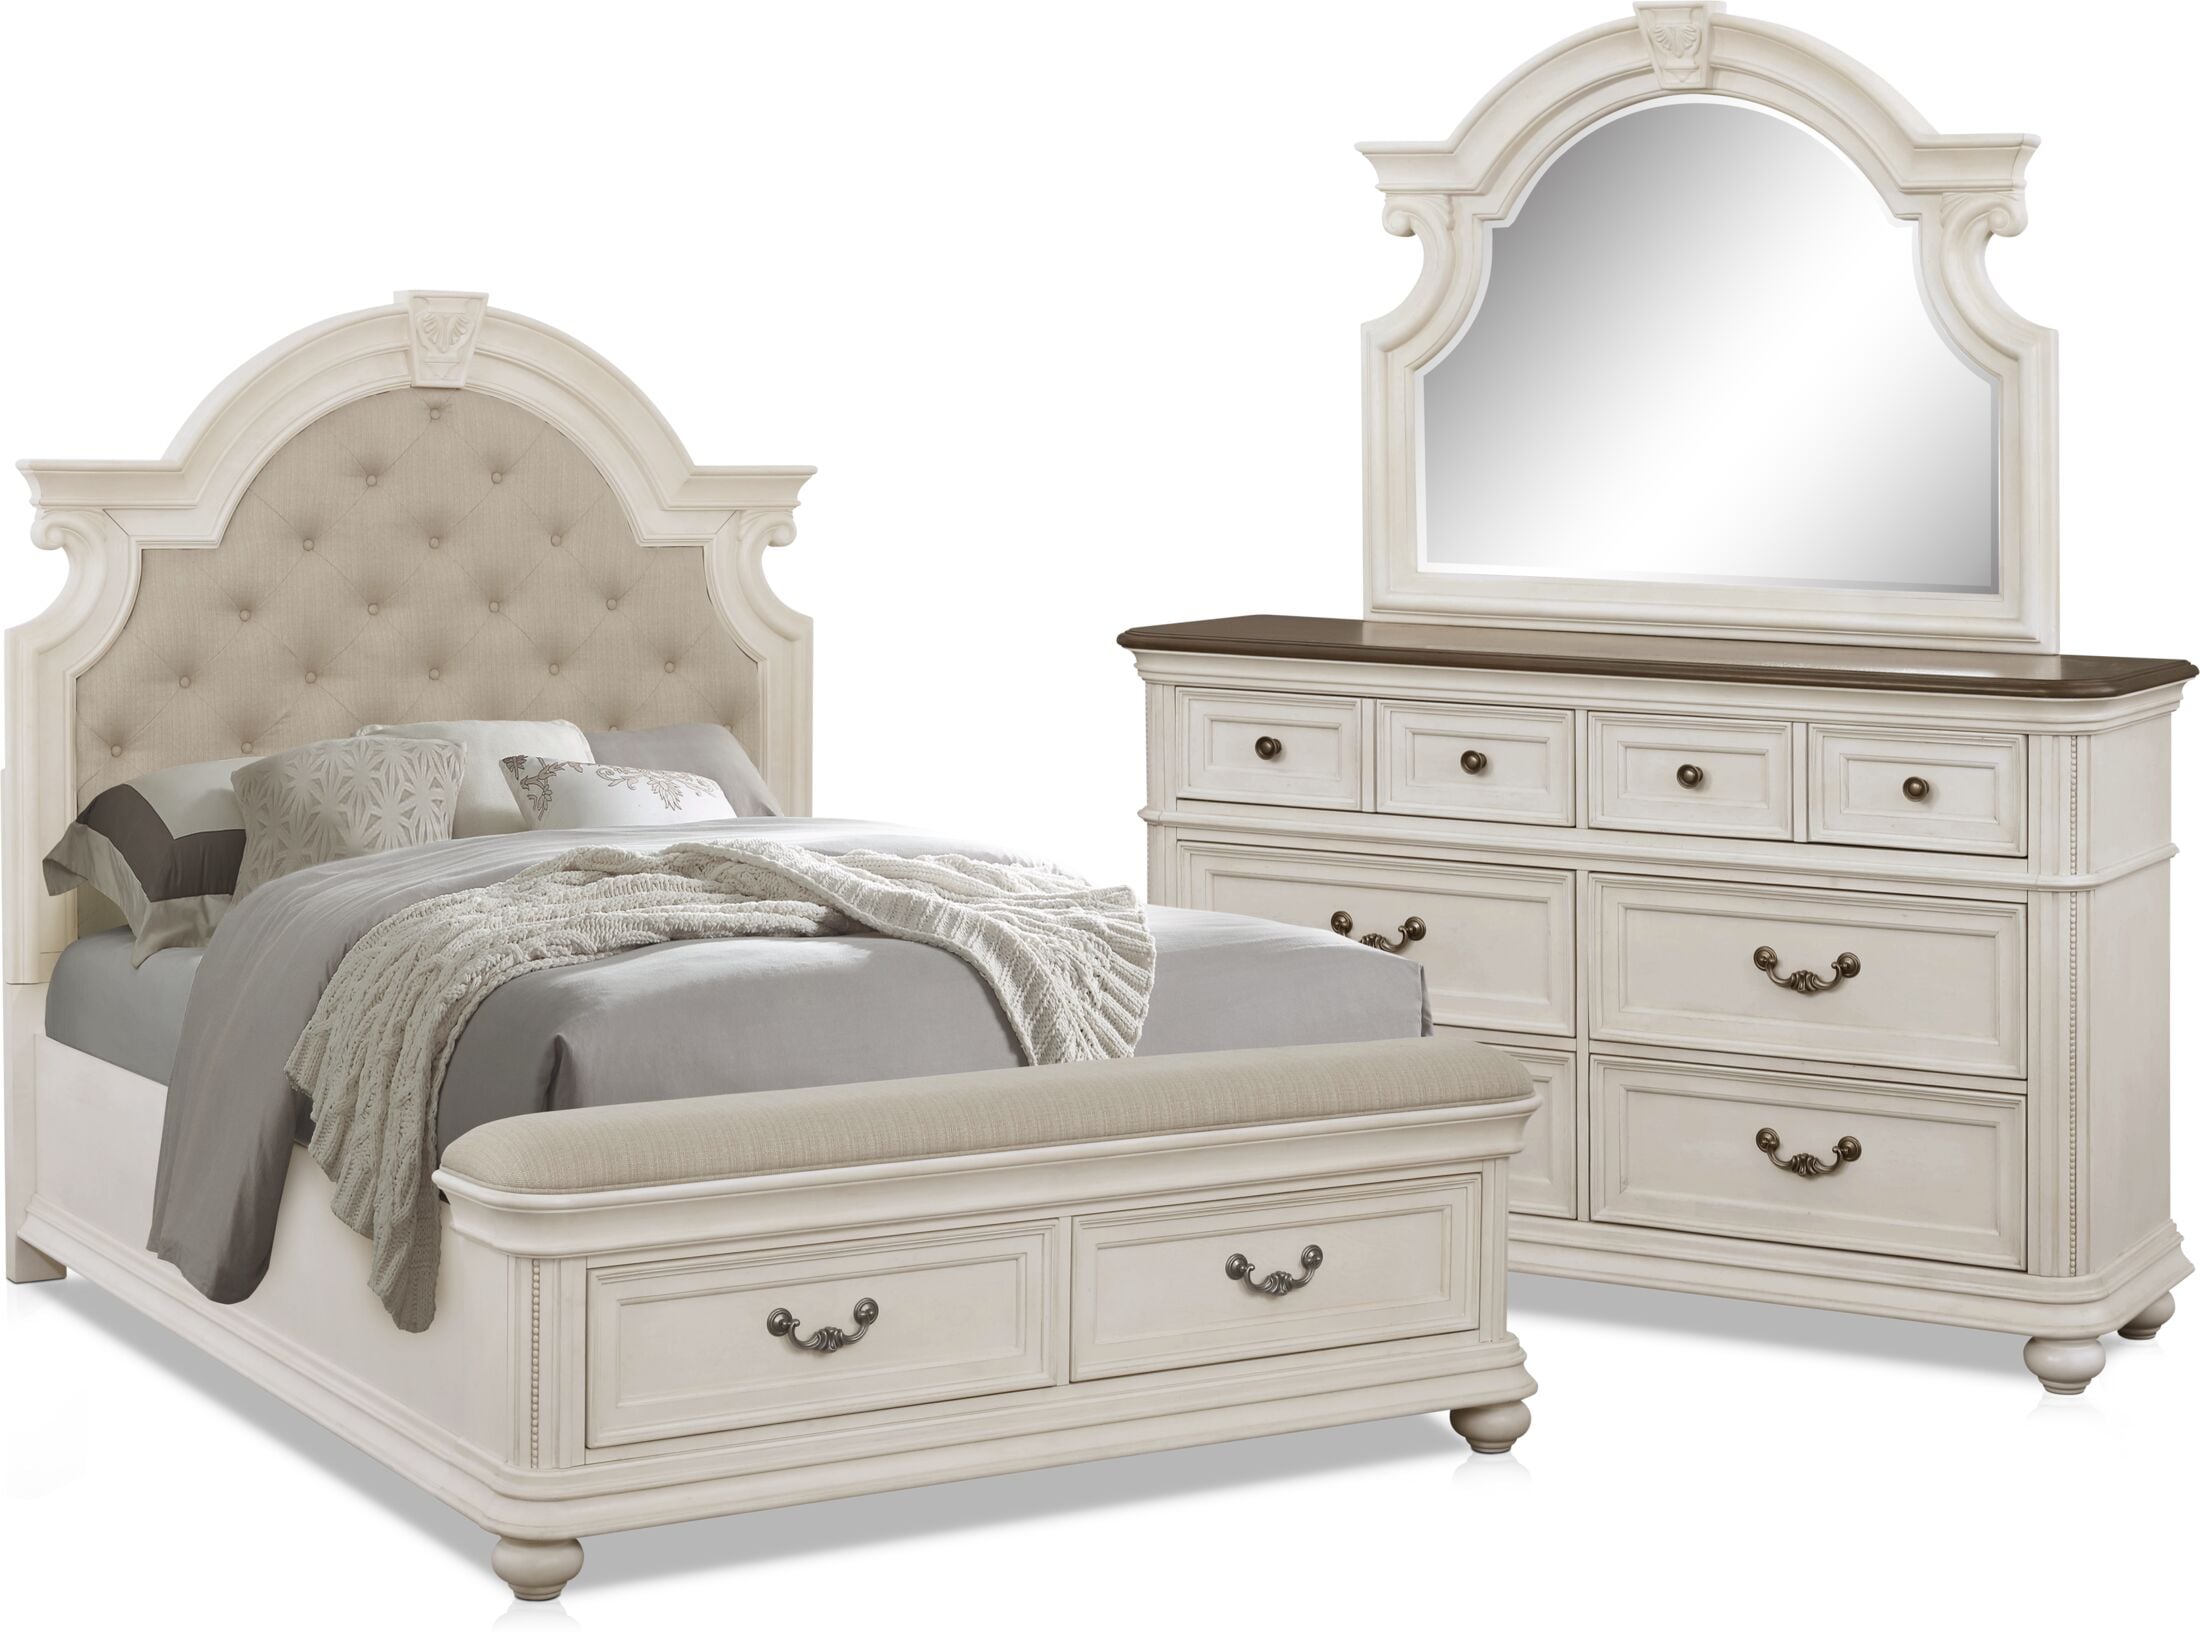 mayfair white gloss bedroom furniture